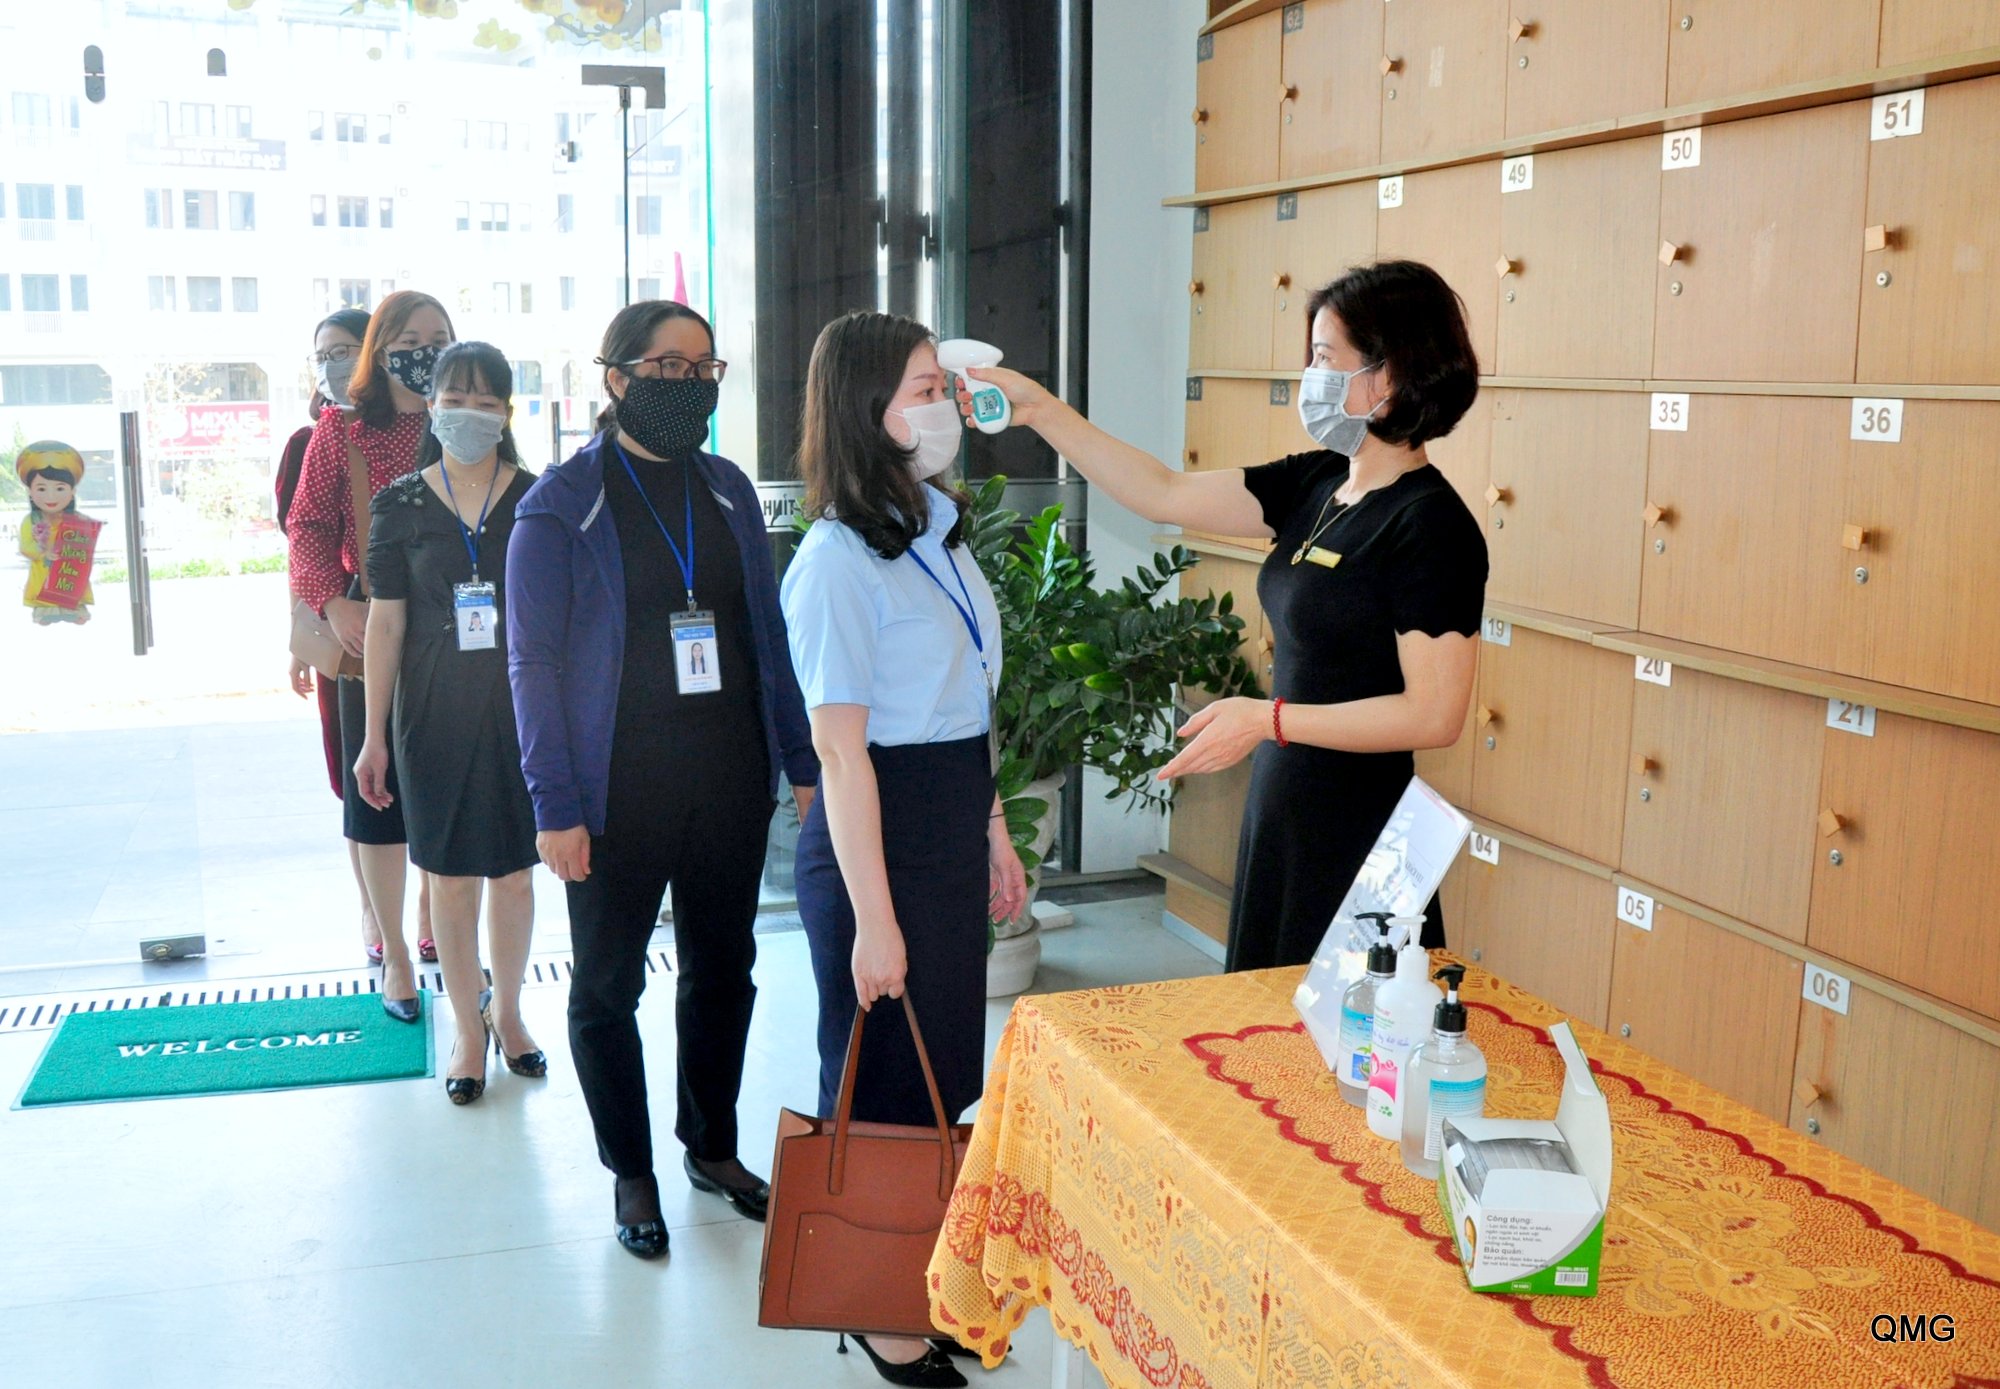 Body temperature checks at Quang Ninh Library